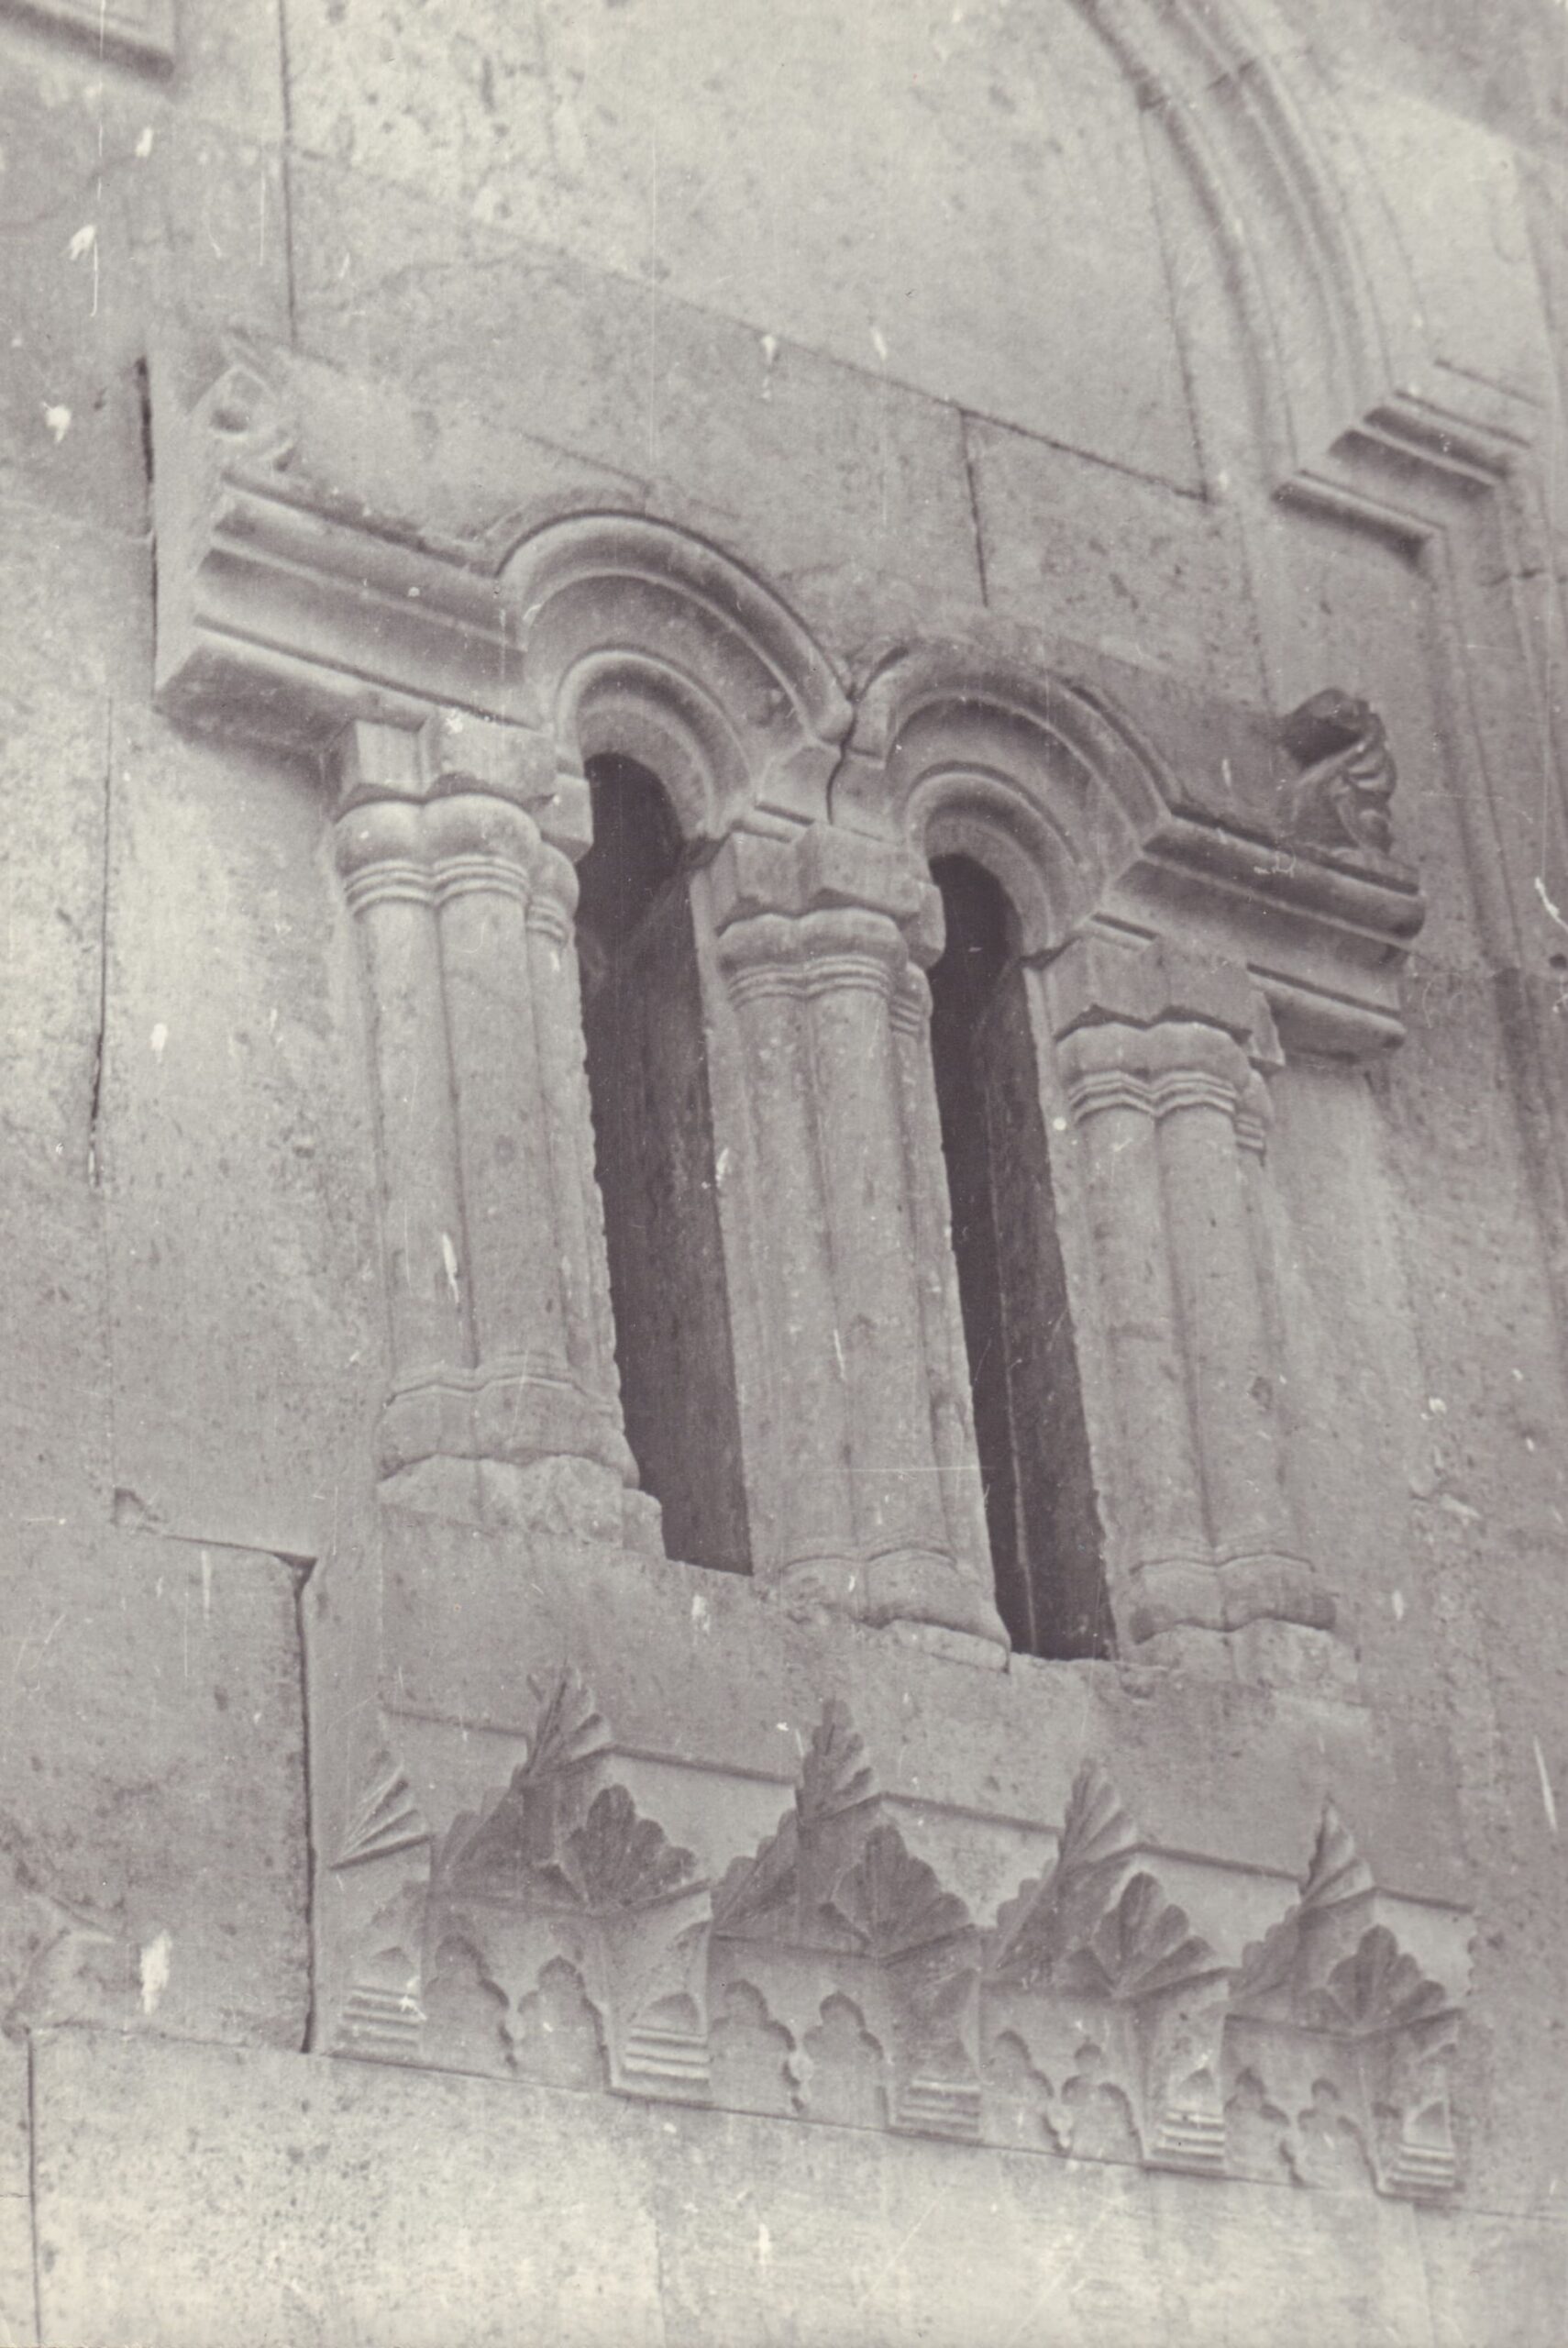 Սբ, Գրիգոր Լուսավորիչ եկեղեցու արևելյան խորանի պատուհանները